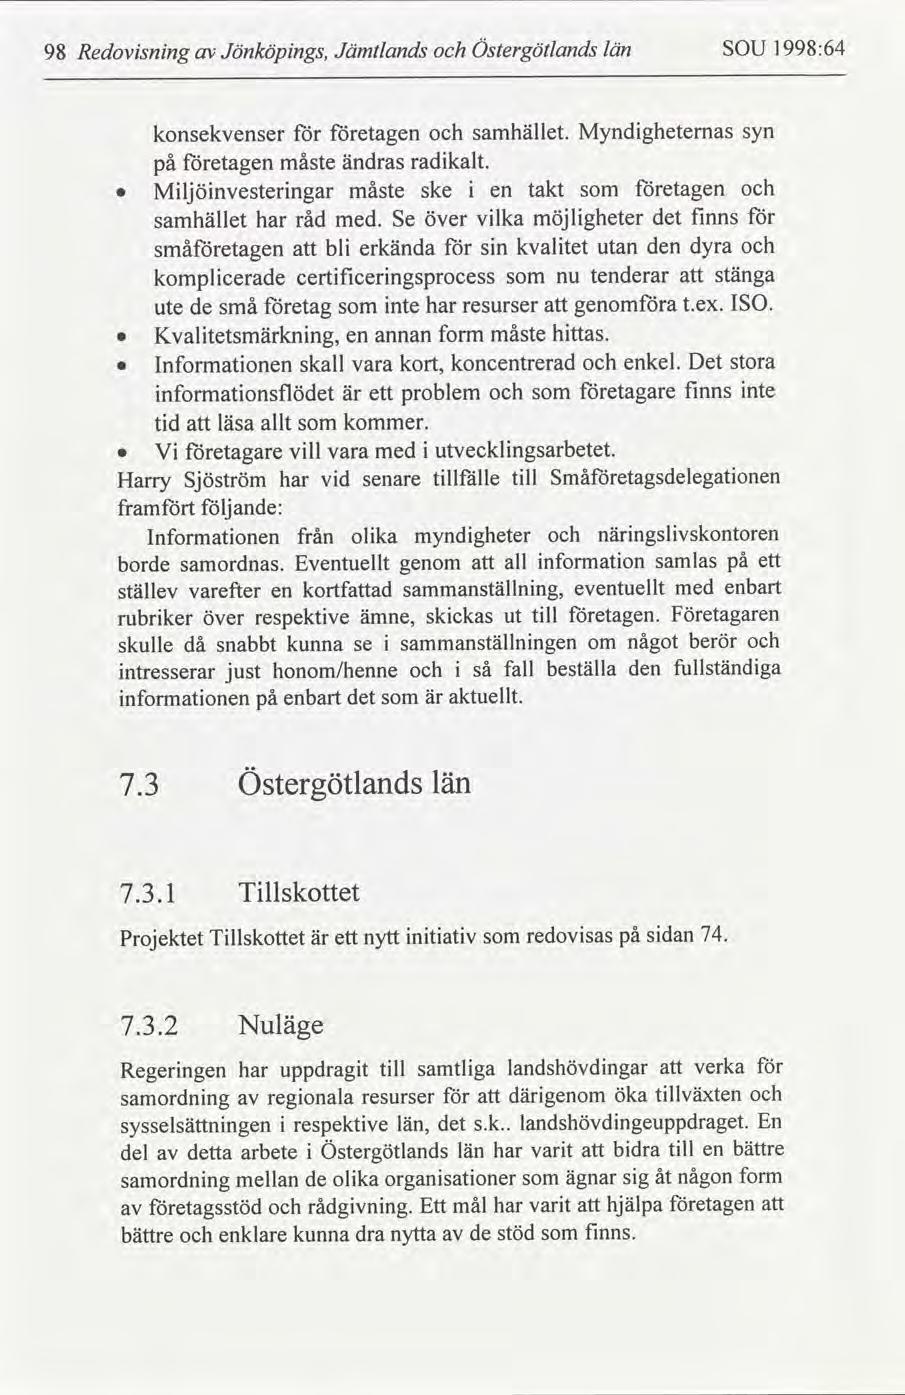 Redovsnng 98 Jönköpngs, Jämtlands Östergötlands län SOU 1998:64 konsekvenser på etagen Mljönvesterngar måste etagen ändras måste radkalt. ske samhället har råd med. Se över samhället.